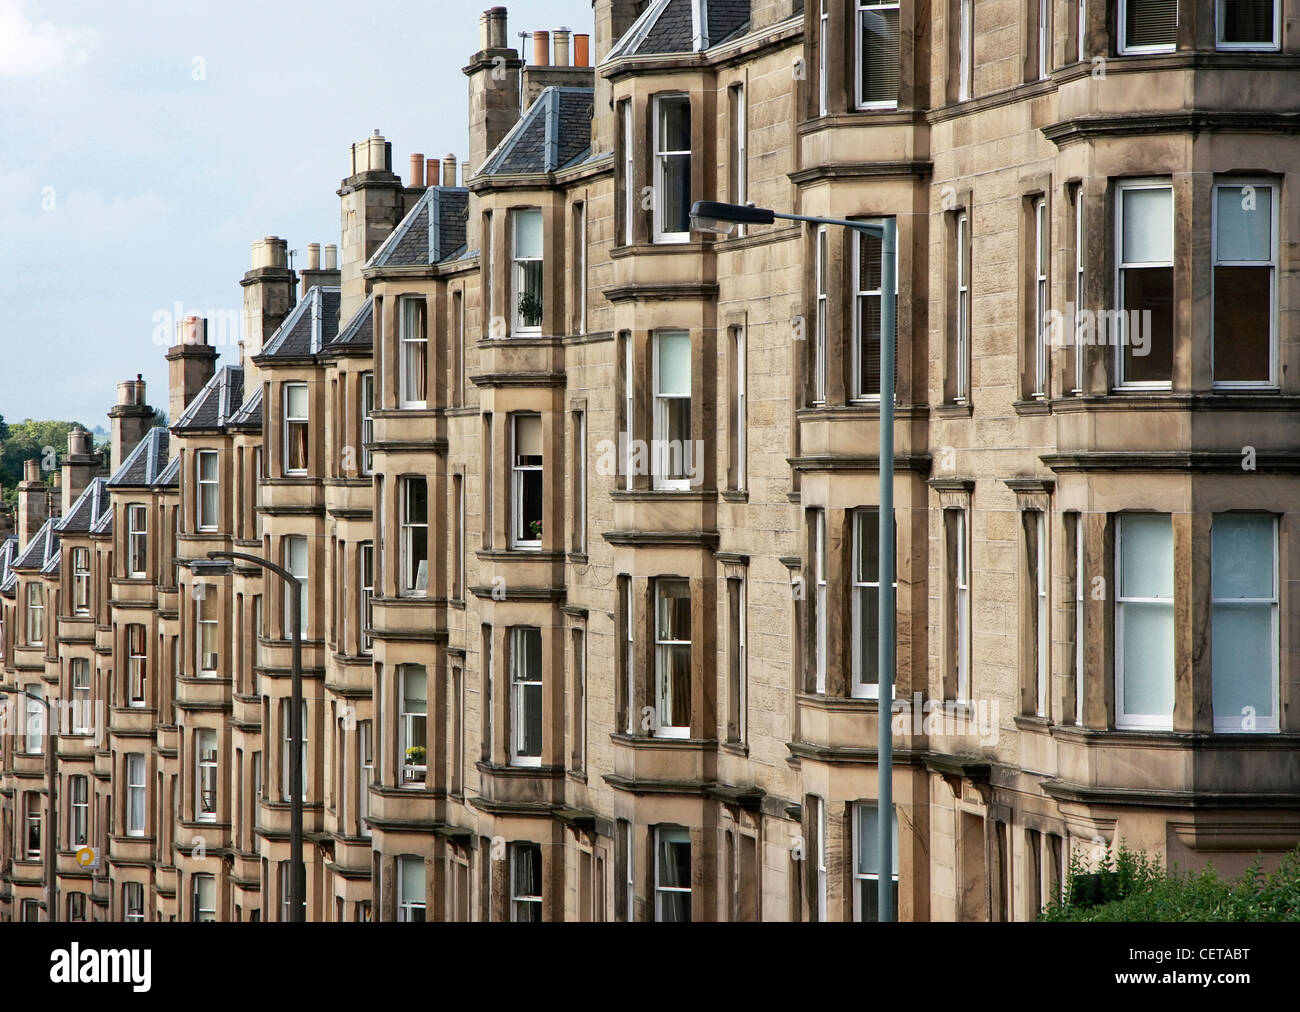 A view down a street in Edinburgh. Stock Photo